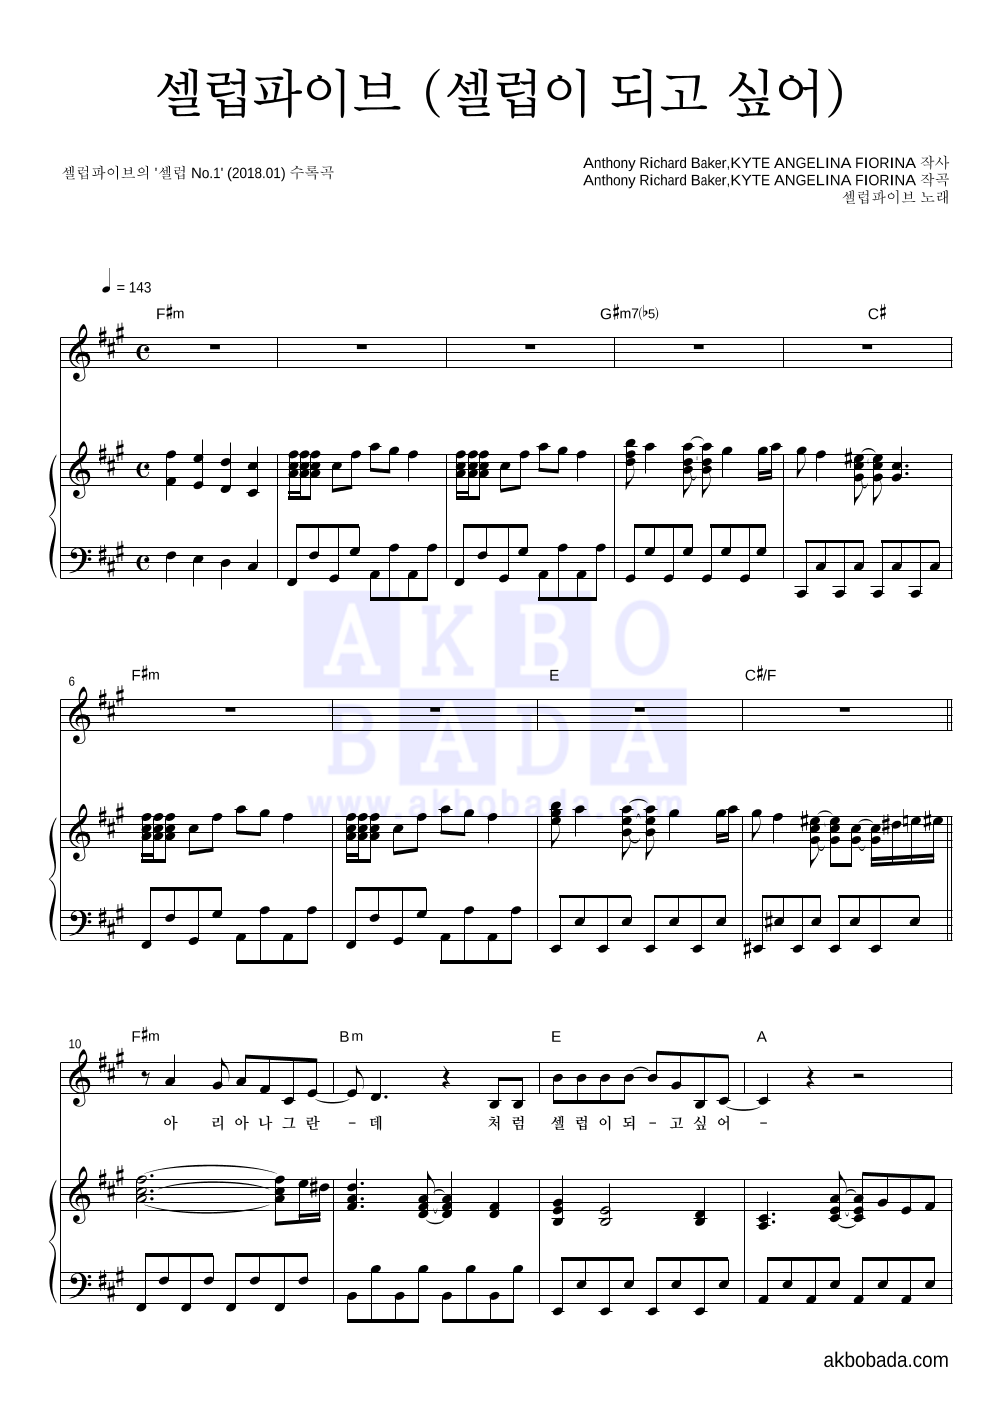 셀럽파이브 - 셀럽파이브 (셀럽이 되고 싶어) 피아노 3단 악보 